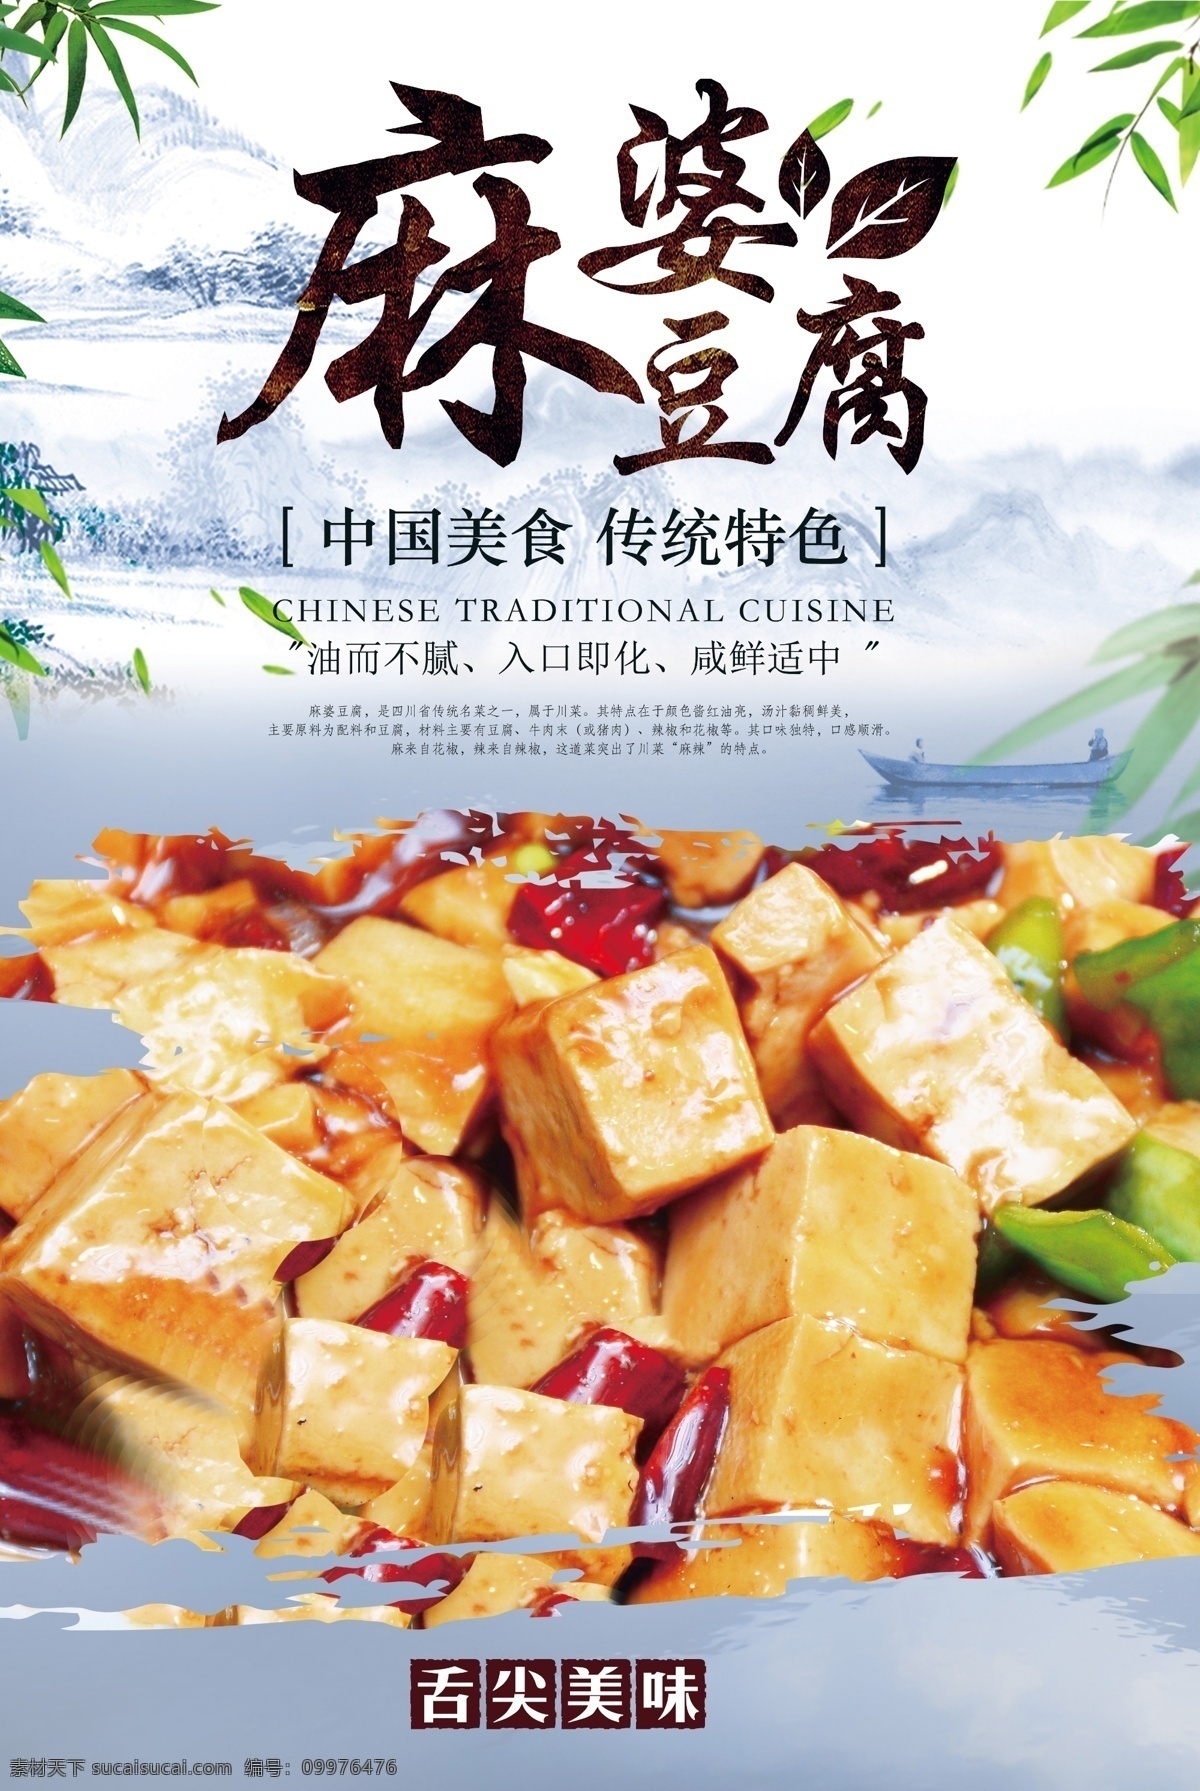 麻 婆 豆腐 美食 活动 宣传海报 素材图片 麻婆豆腐 宣传 海报 餐饮美食 类